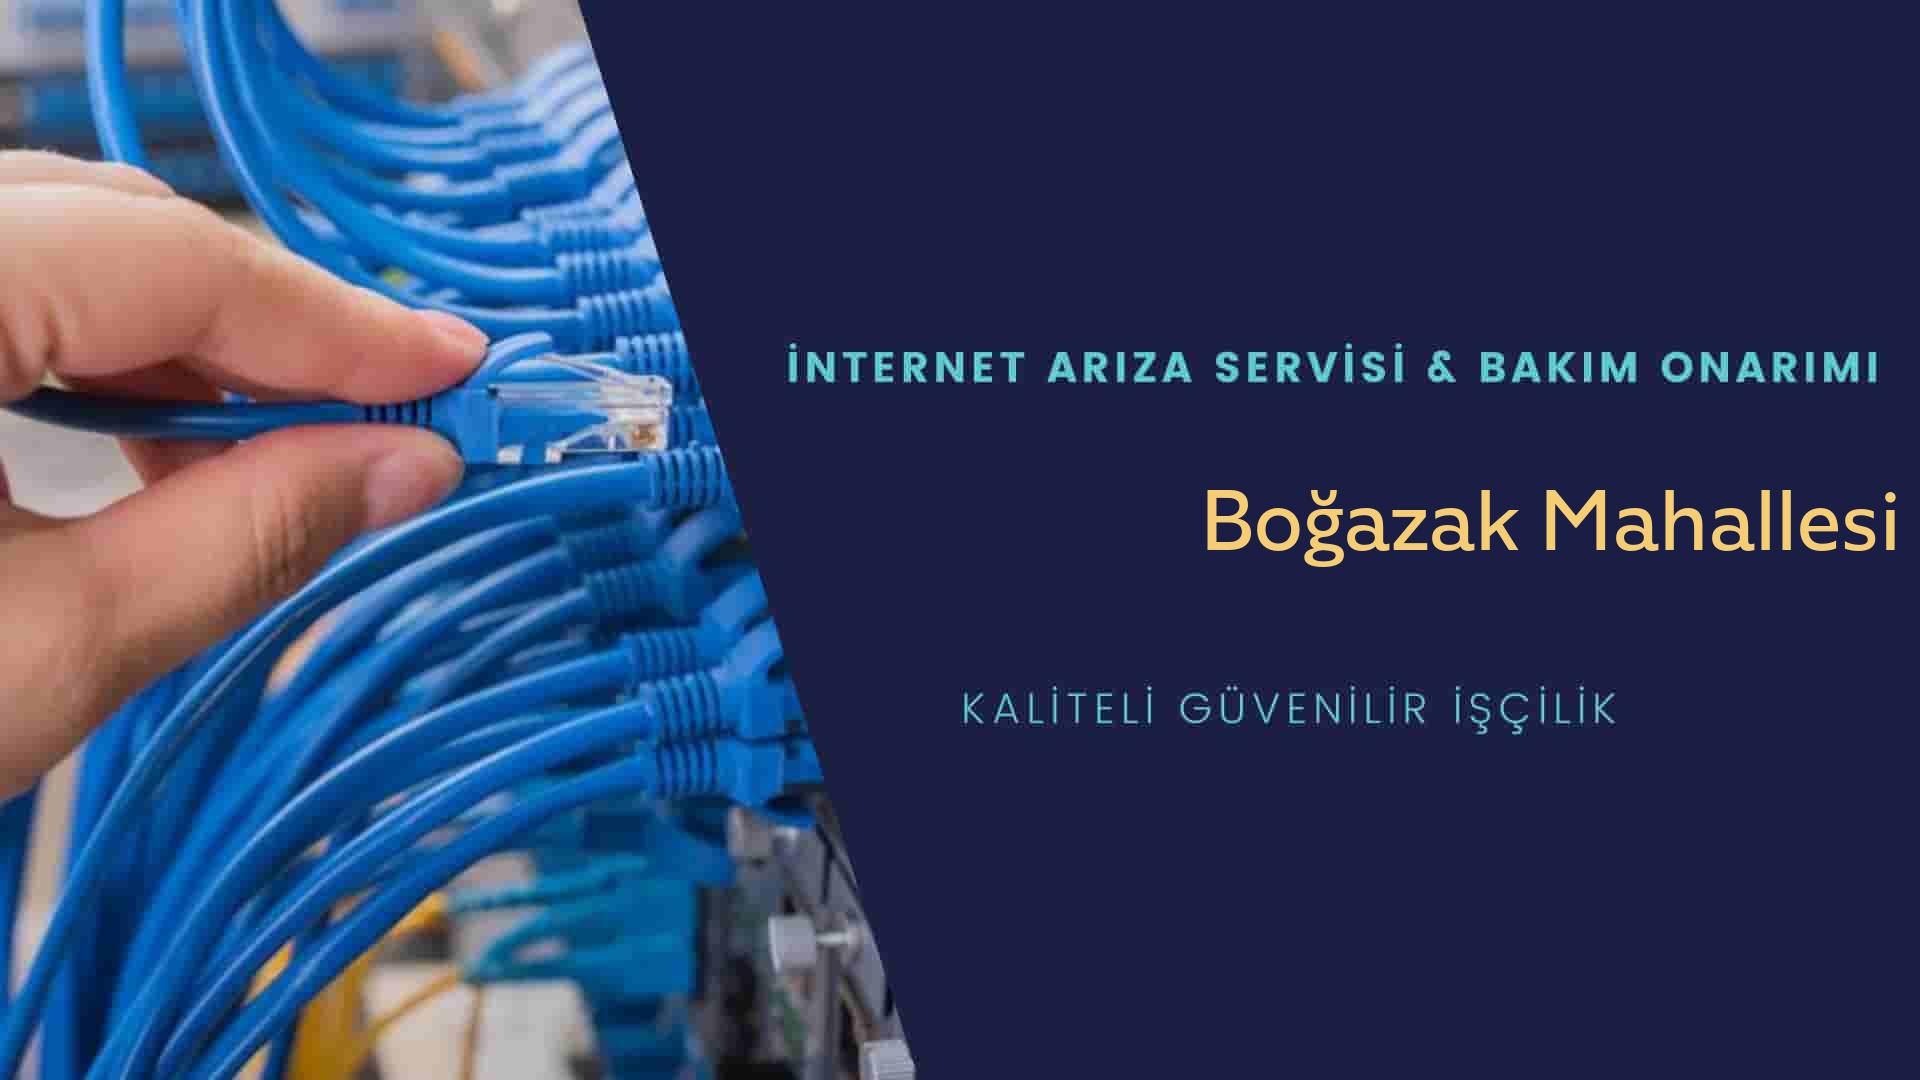 Boğazak Mahallesi internet kablosu çekimi yapan yerler veya elektrikçiler mi? arıyorsunuz doğru yerdesiniz o zaman sizlere 7/24 yardımcı olacak profesyonel ustalarımız bir telefon kadar yakındır size.